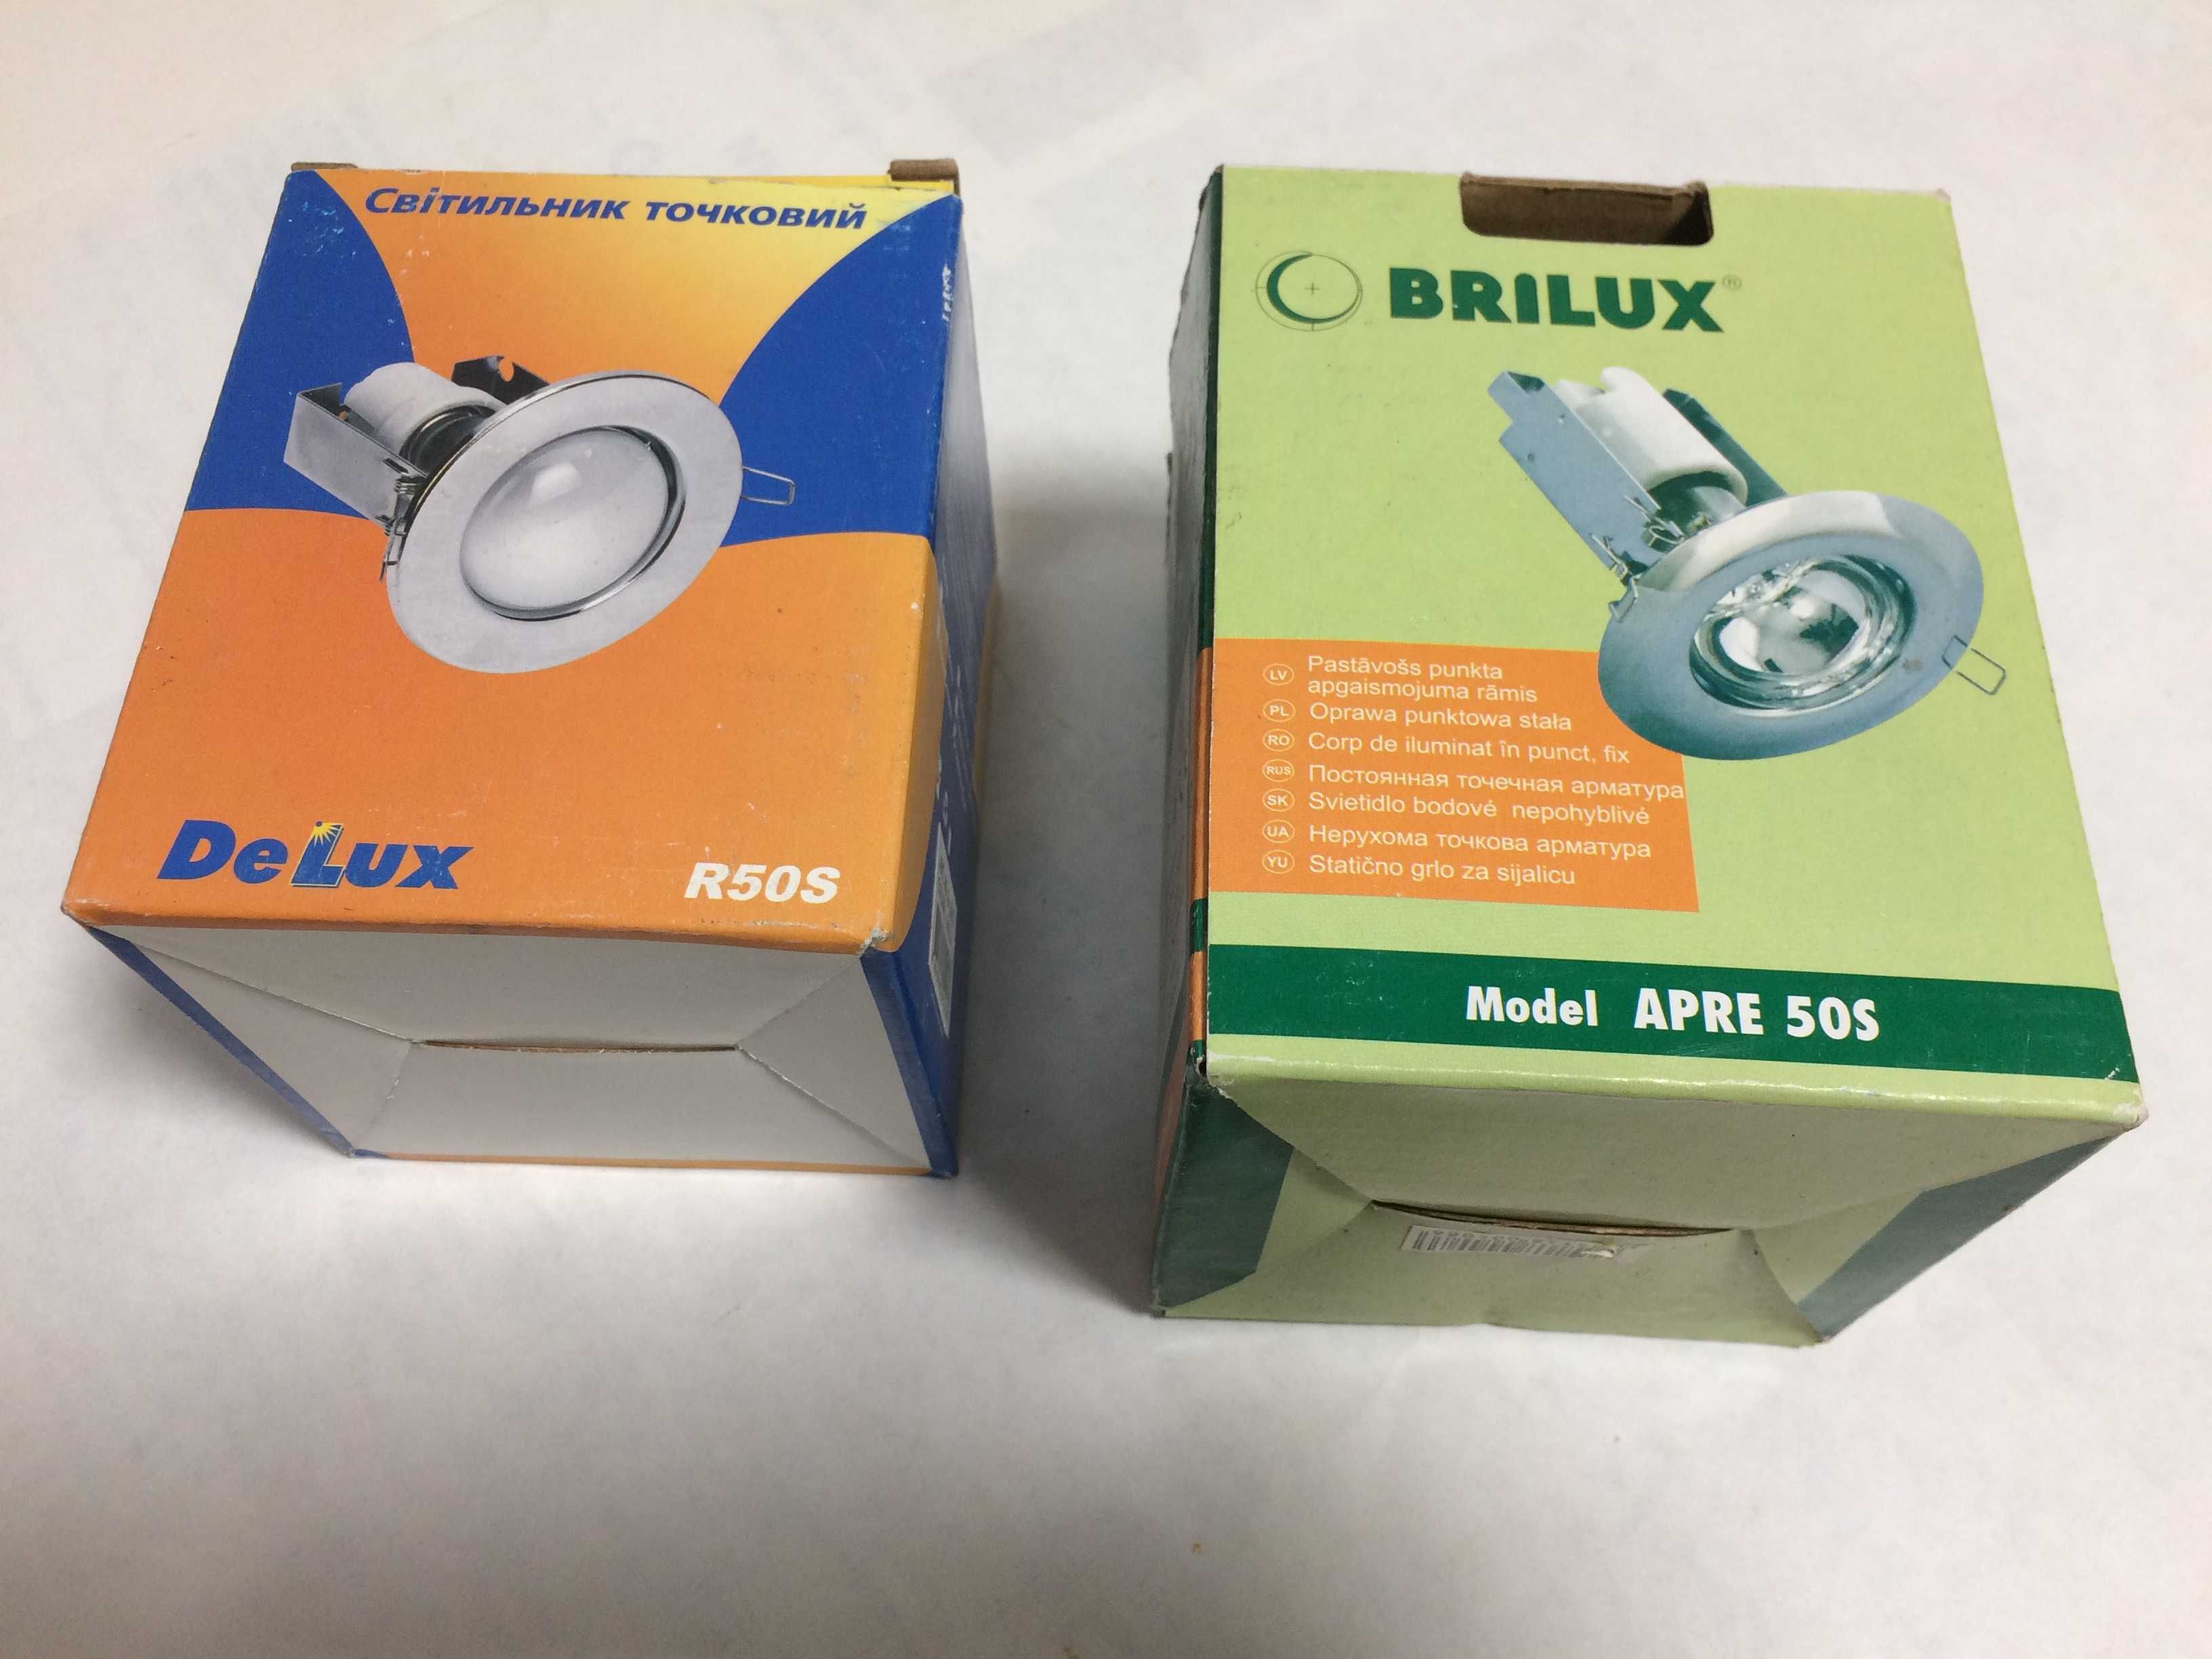 Точечный светильник DELUX R50S и BRILUX Model APRE 50S